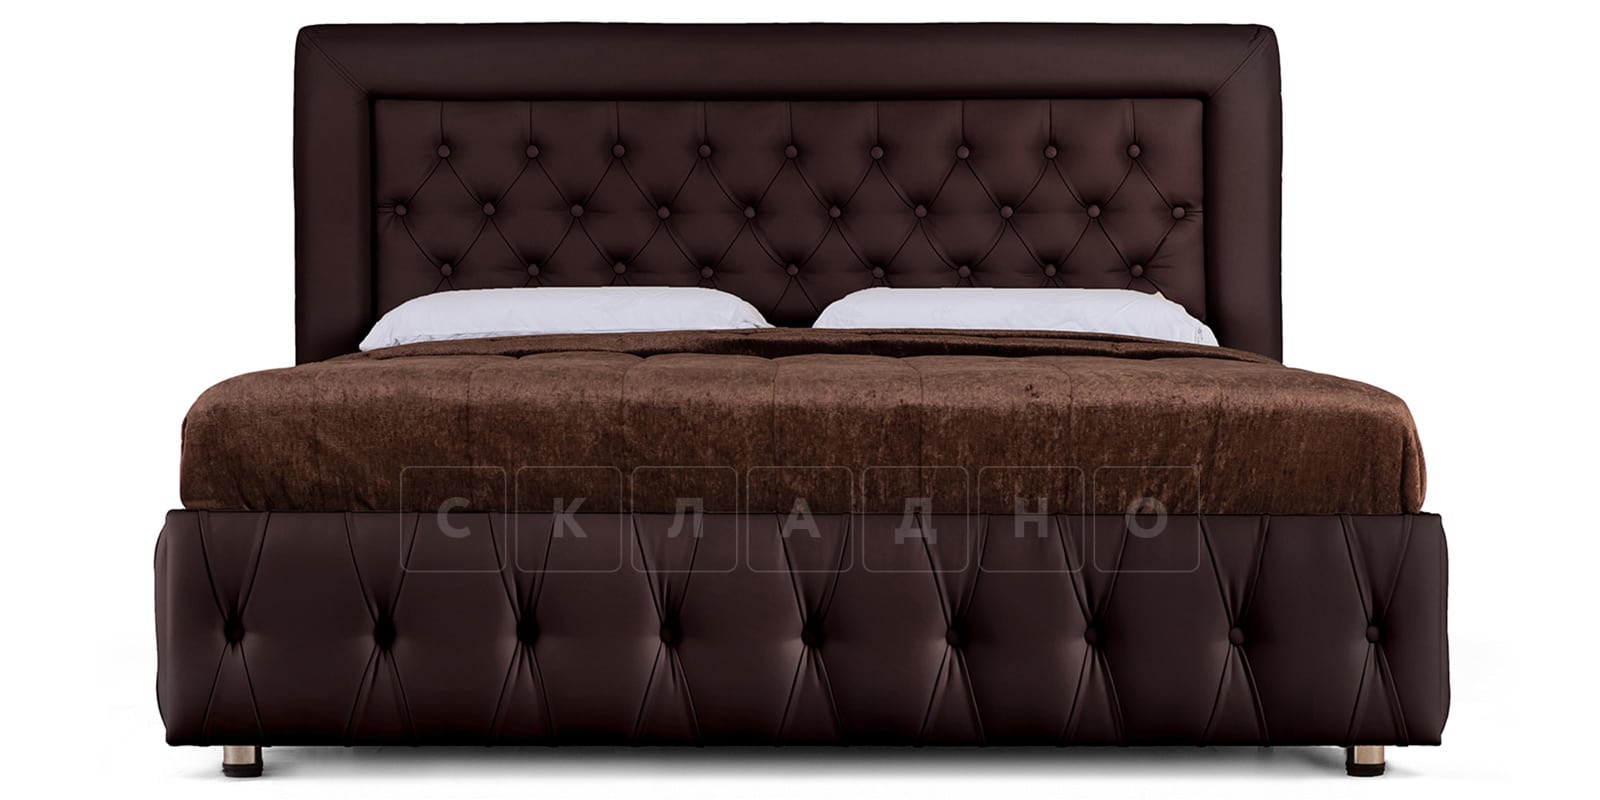 Мягкая кровать Малибу 160 см экокожа шоколадного цвета вариант 7-2 фото 2 | интернет-магазин Складно